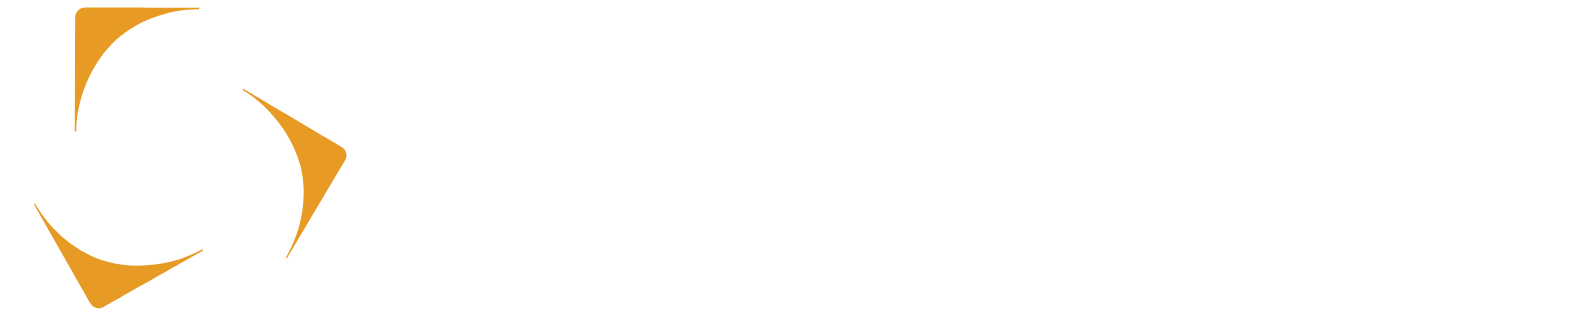 Kazatomprom logo large for dark backgrounds (transparent PNG)